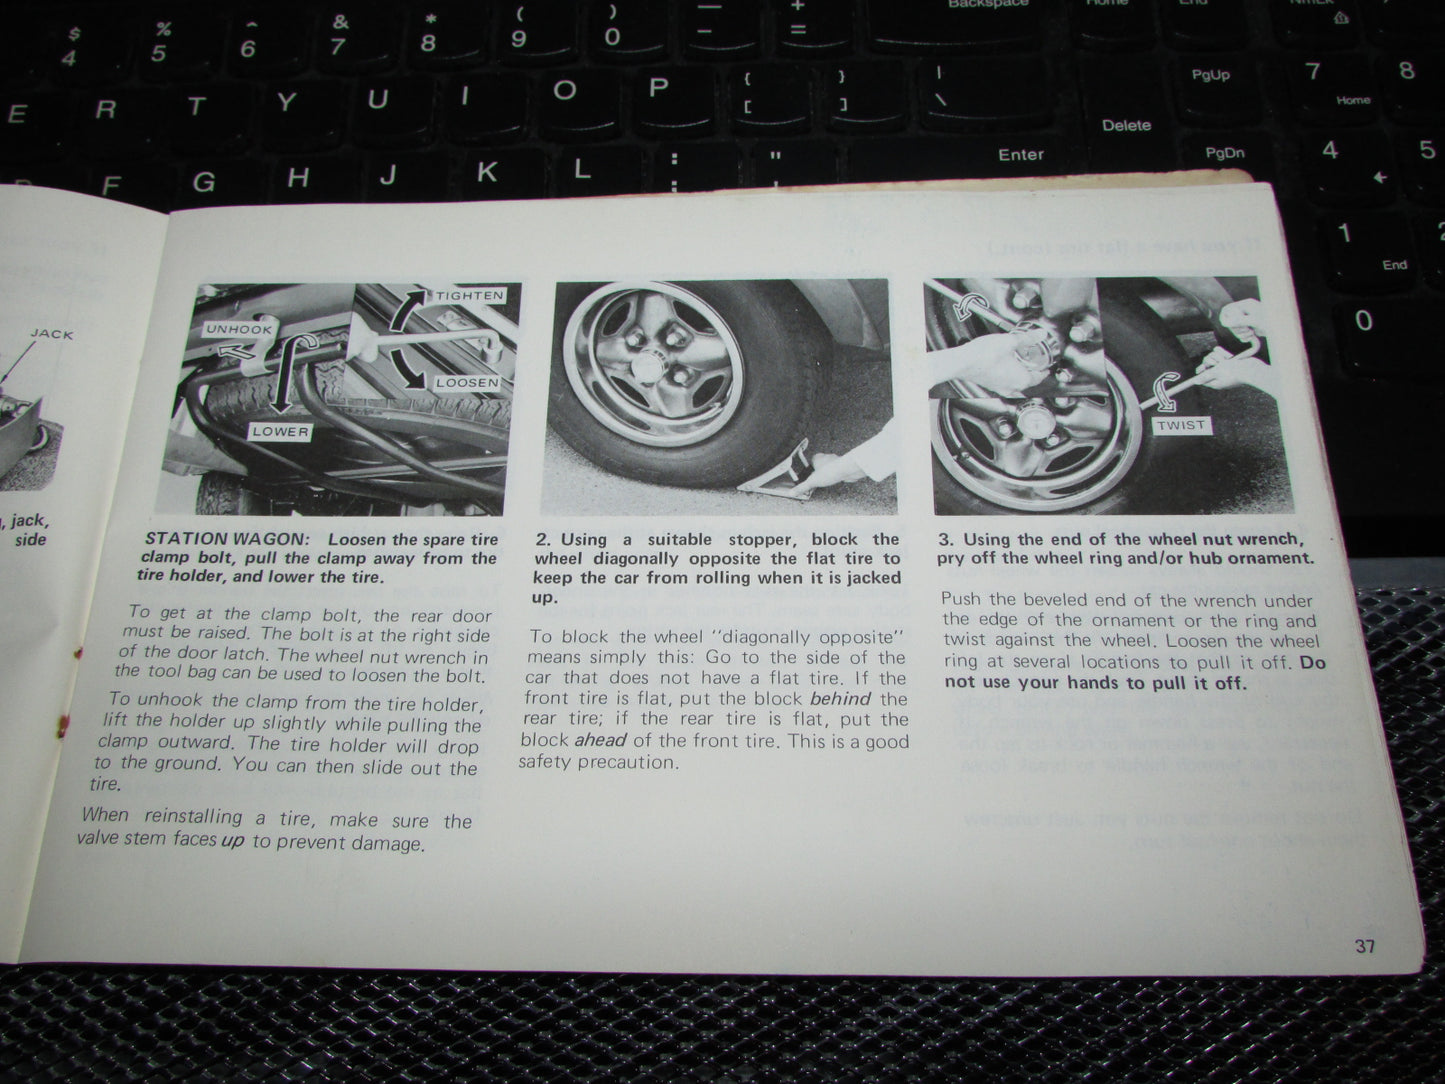 Toyota Corolla (1978) Owners Manual